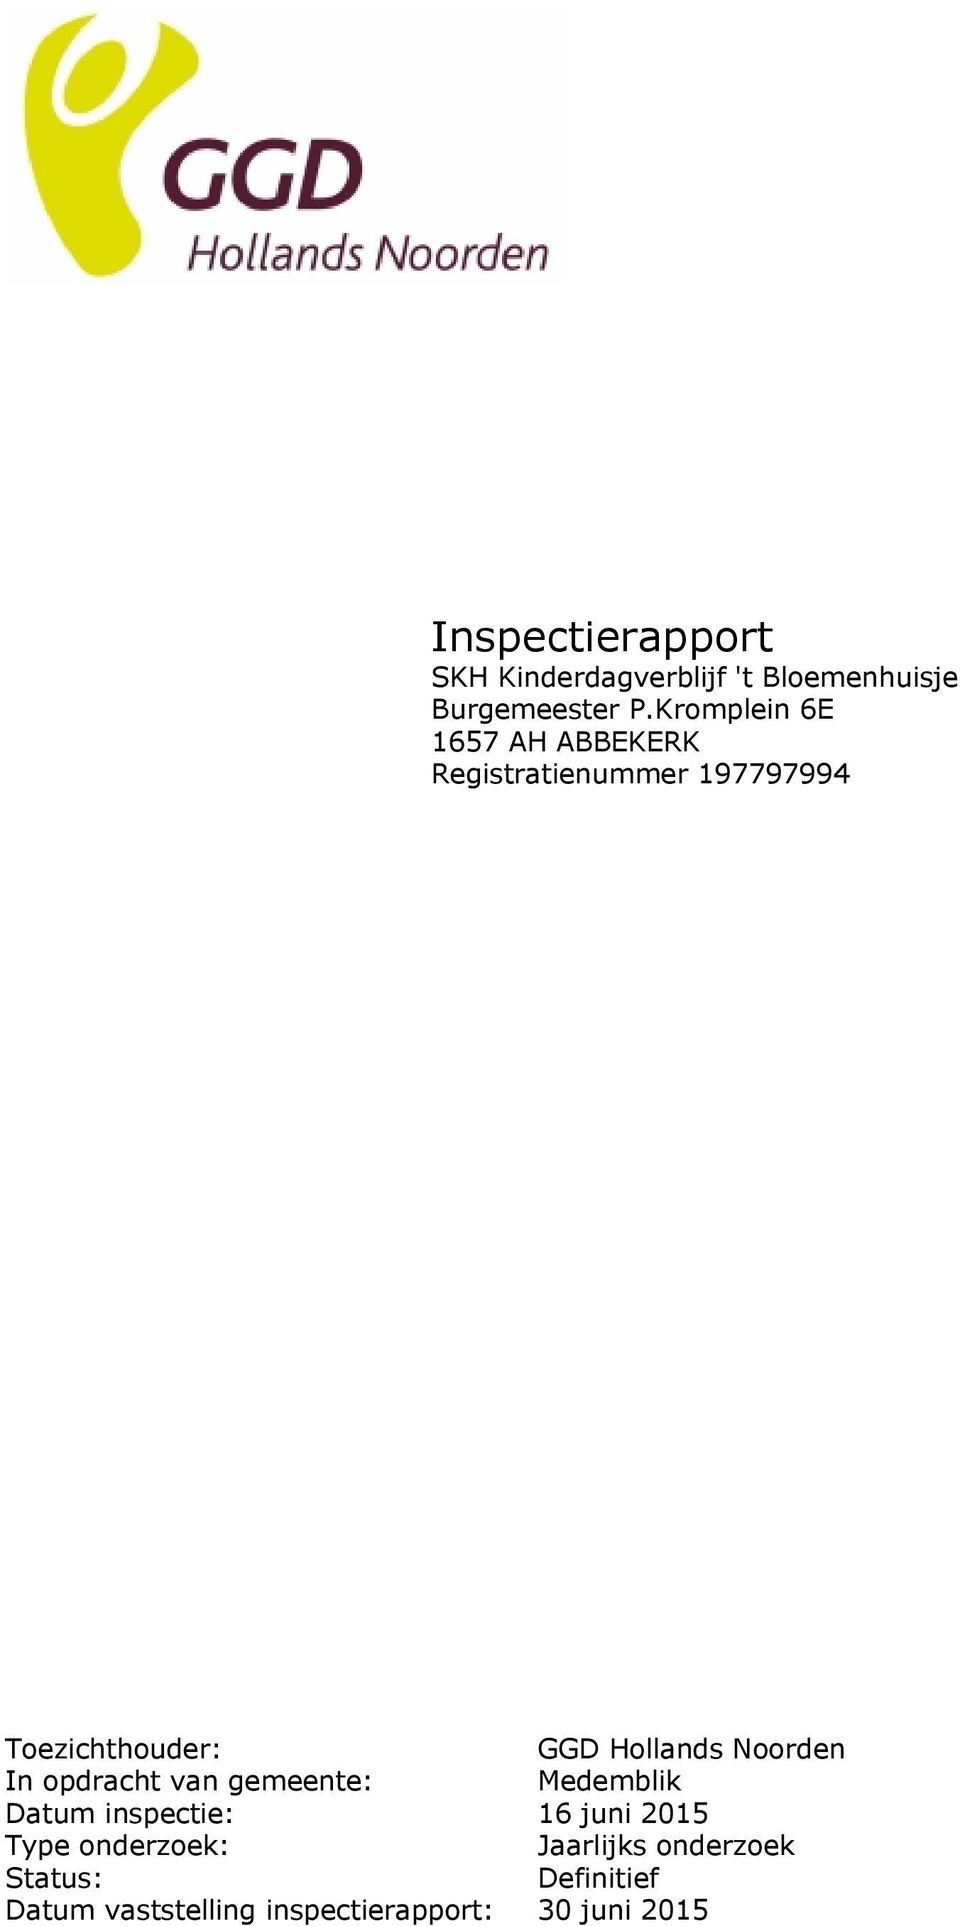 Hollands Noorden In opdracht van gemeente: Medemblik Datum inspectie: 16 juni 2015